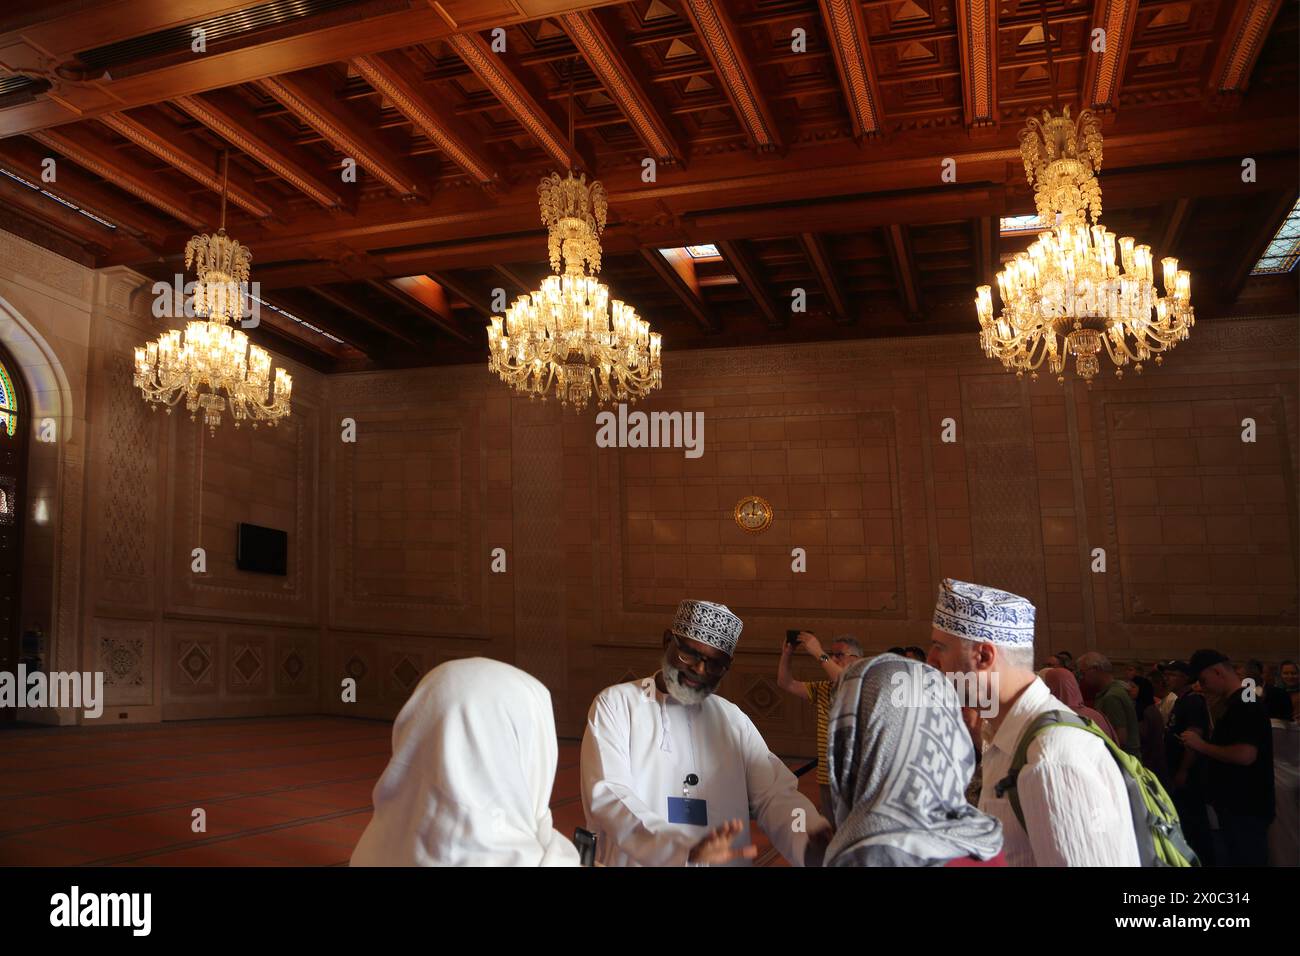 Guide touristique de la Grande Mosquée du sultan Qaboos avec des touristes dans la salle de prière des femmes avec plafond omanais en bois et lustres Muscat Oman Banque D'Images